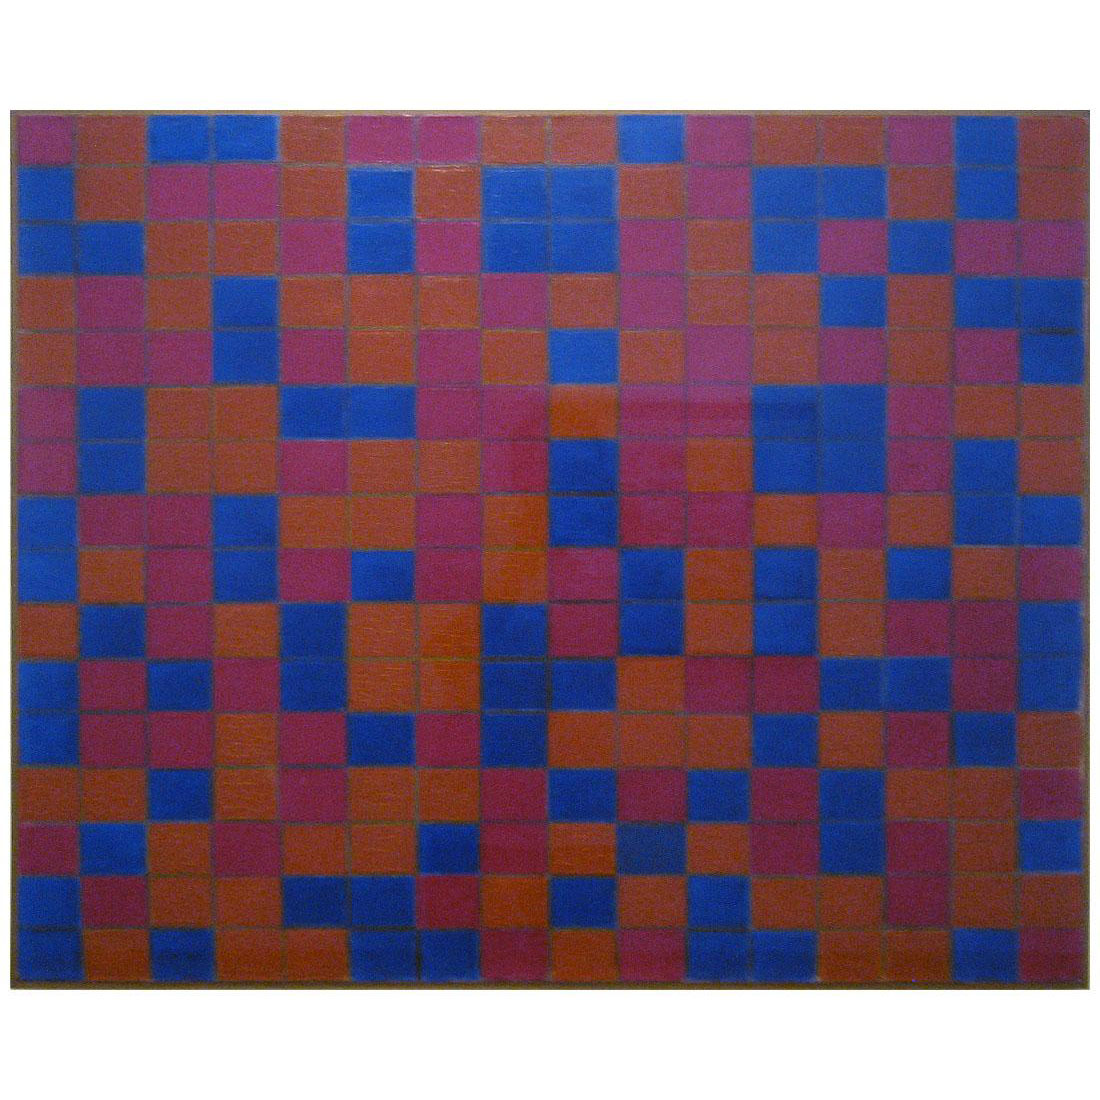 Piet Mondriaan. Composition with Grid 8. 1919. Gemeentemuseum Den Haag